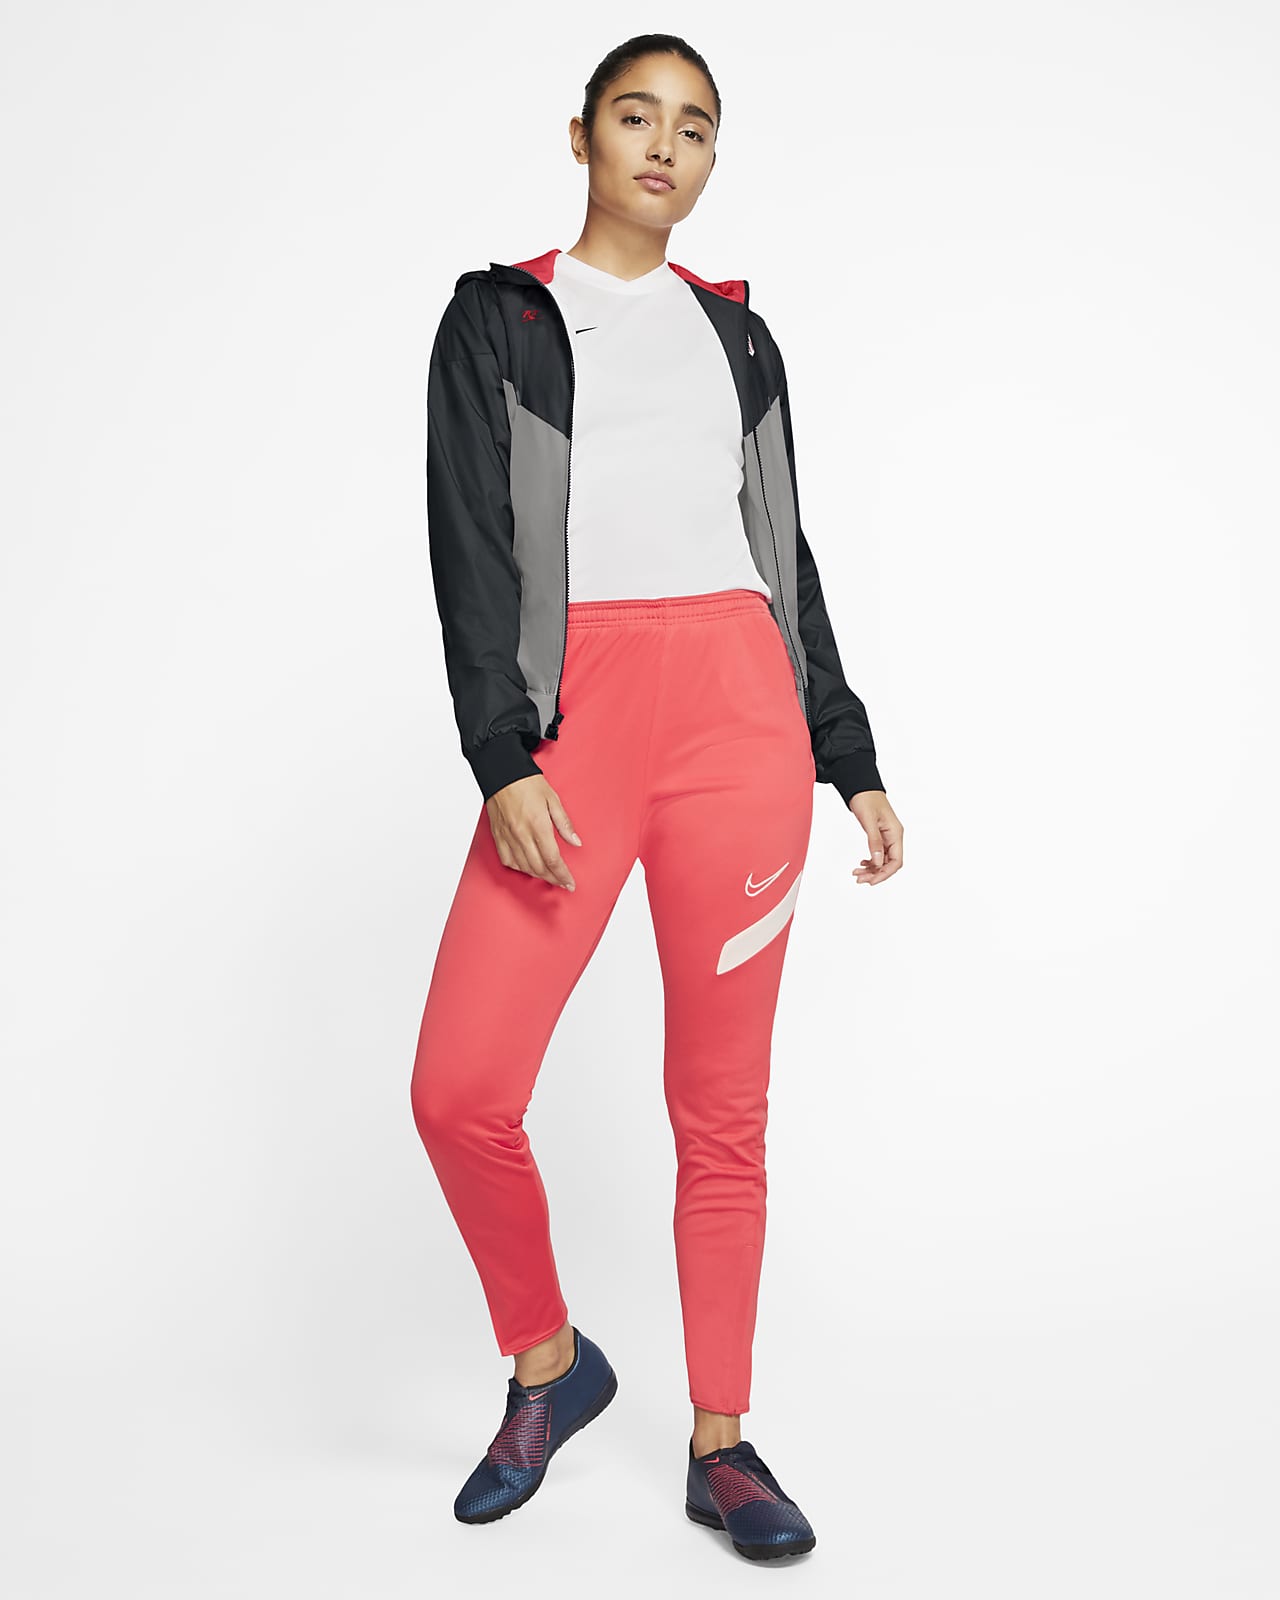 Nike Sportswear Windrunner Floral Jacket - Women's Small - 922188 471